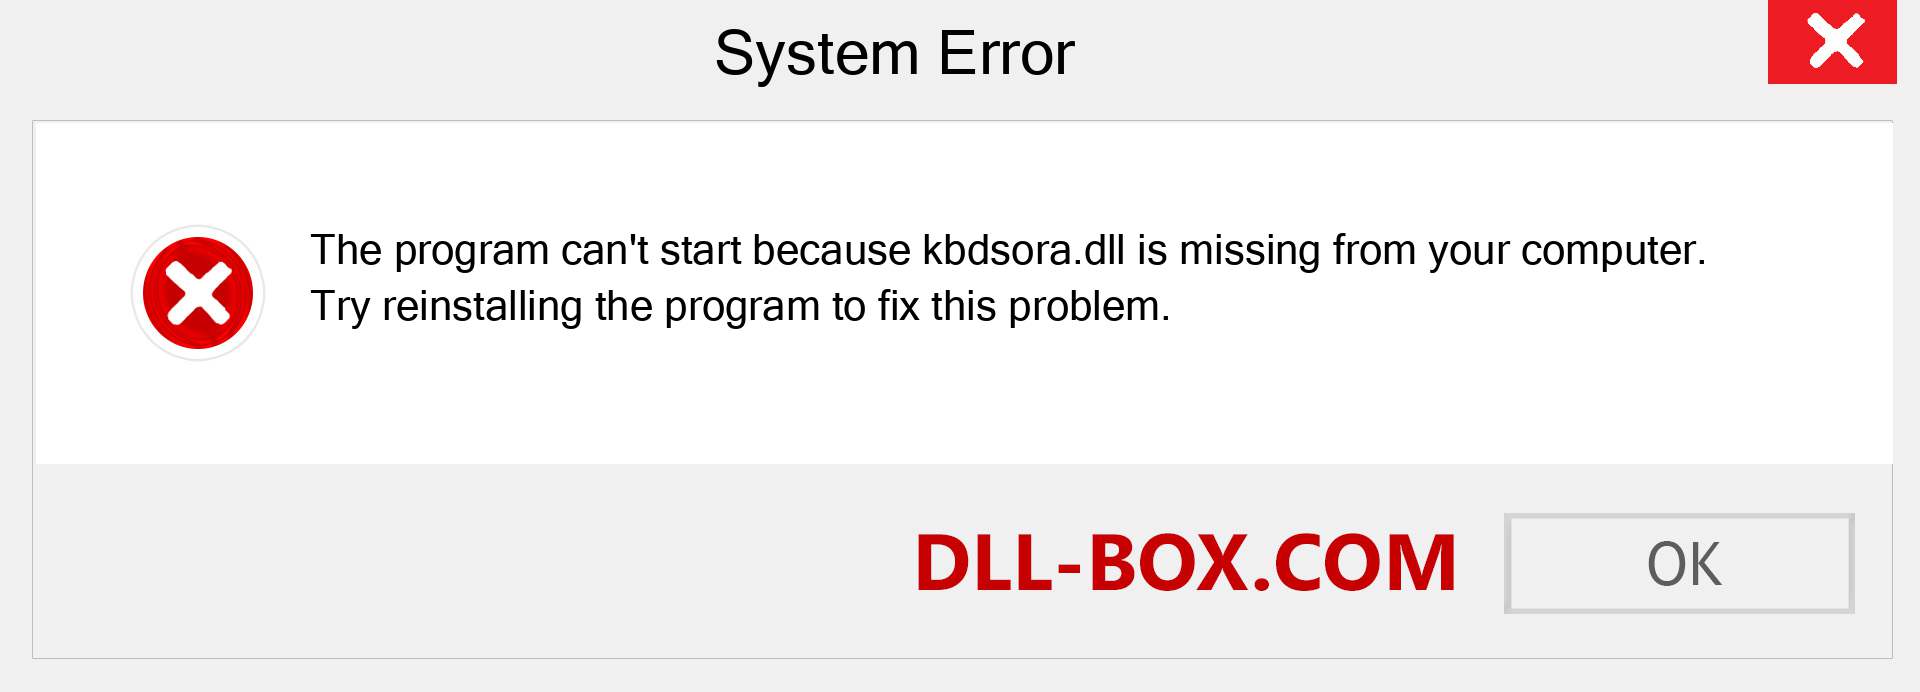  kbdsora.dll file is missing?. Download for Windows 7, 8, 10 - Fix  kbdsora dll Missing Error on Windows, photos, images